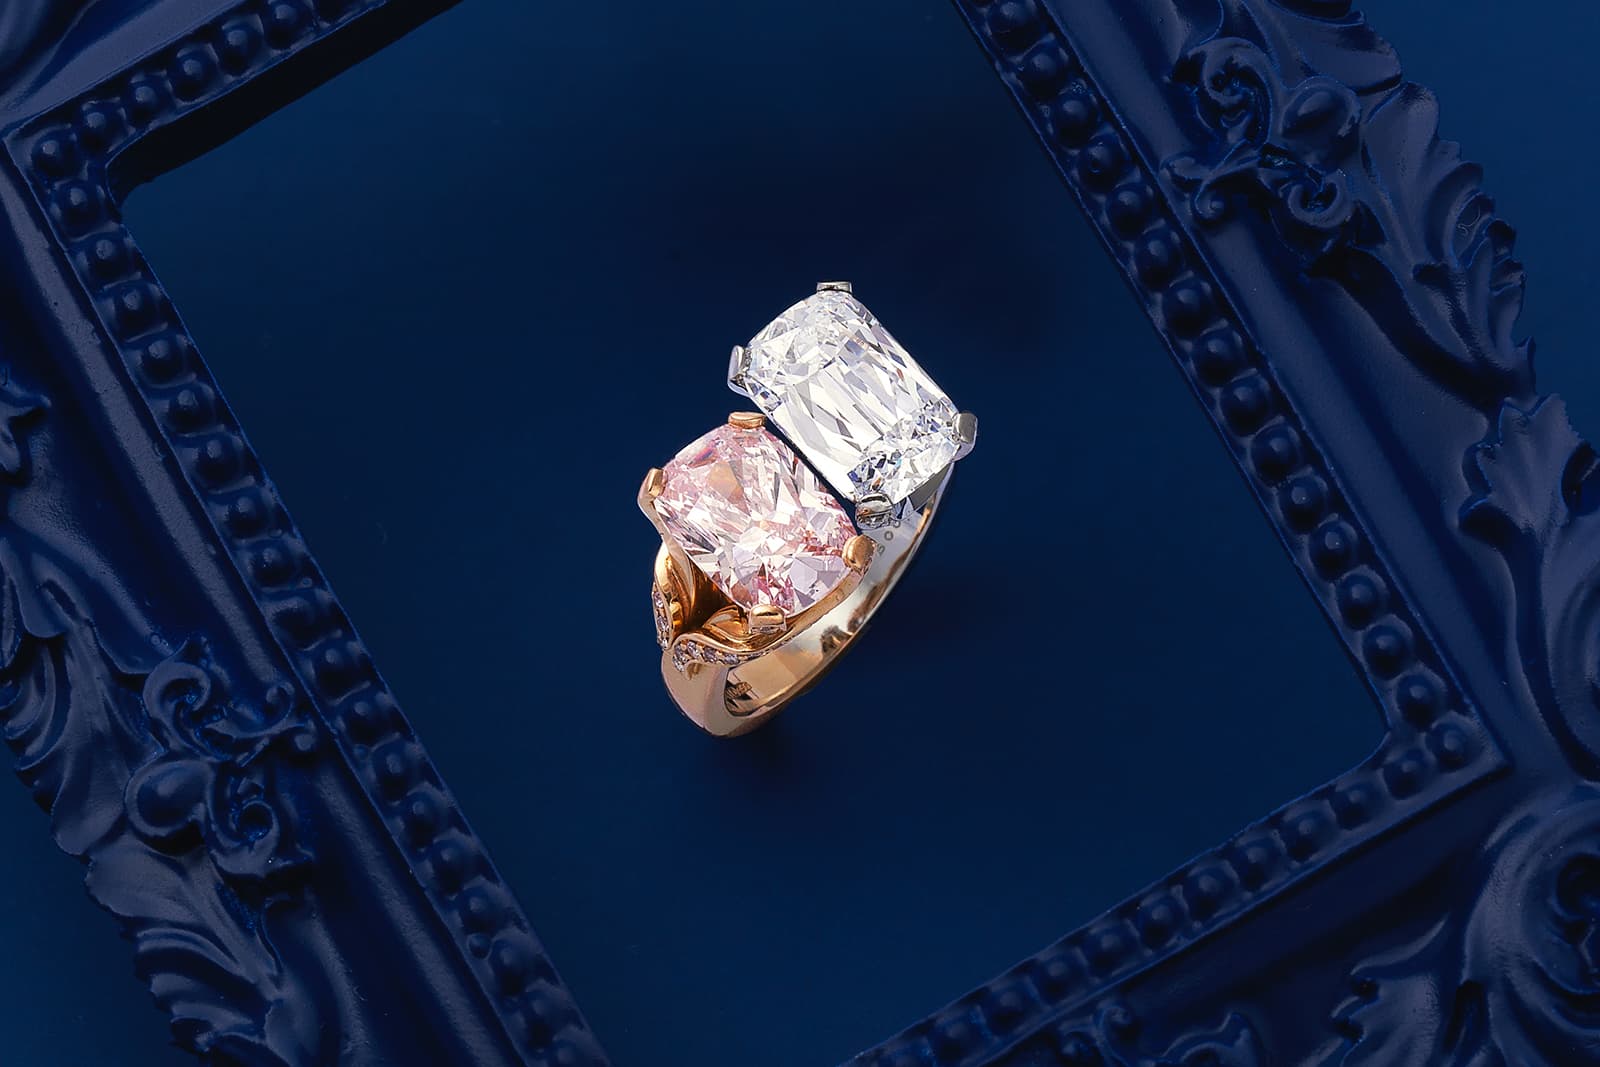 Кольцо с бриллиантами фантазийных оттенков от Boodles, украшенное фантазийным фиолетово-розовым природным бриллиантом в огранке «кушон» весом 2,52 карата и бриллиантом в огранке «ашока» цвета D и чистоты VVS1 весом 3,23 карата - лот аукциона Bonhams London Jewels в сентябре 2021 года